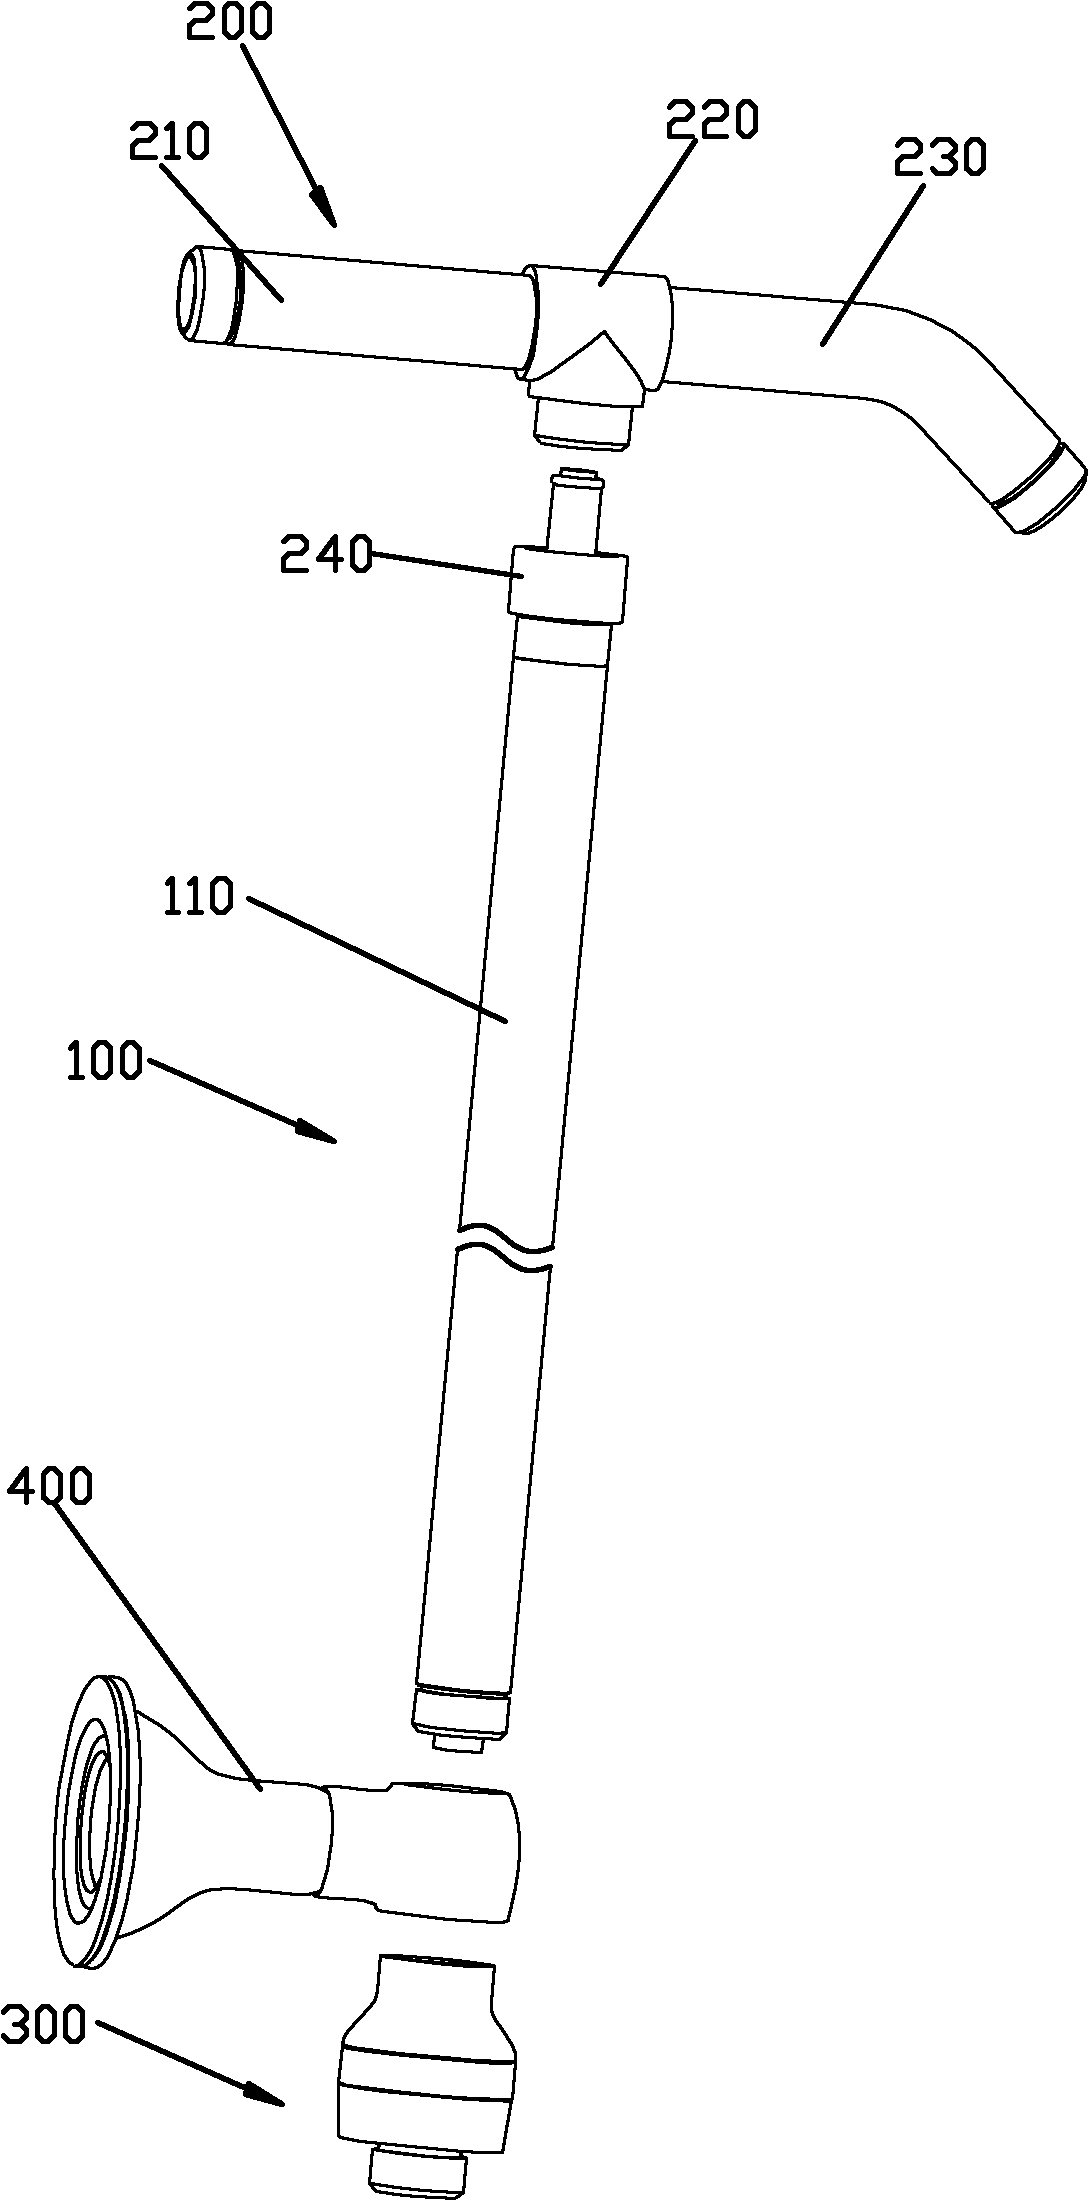 Bottom rotary switching mechanism